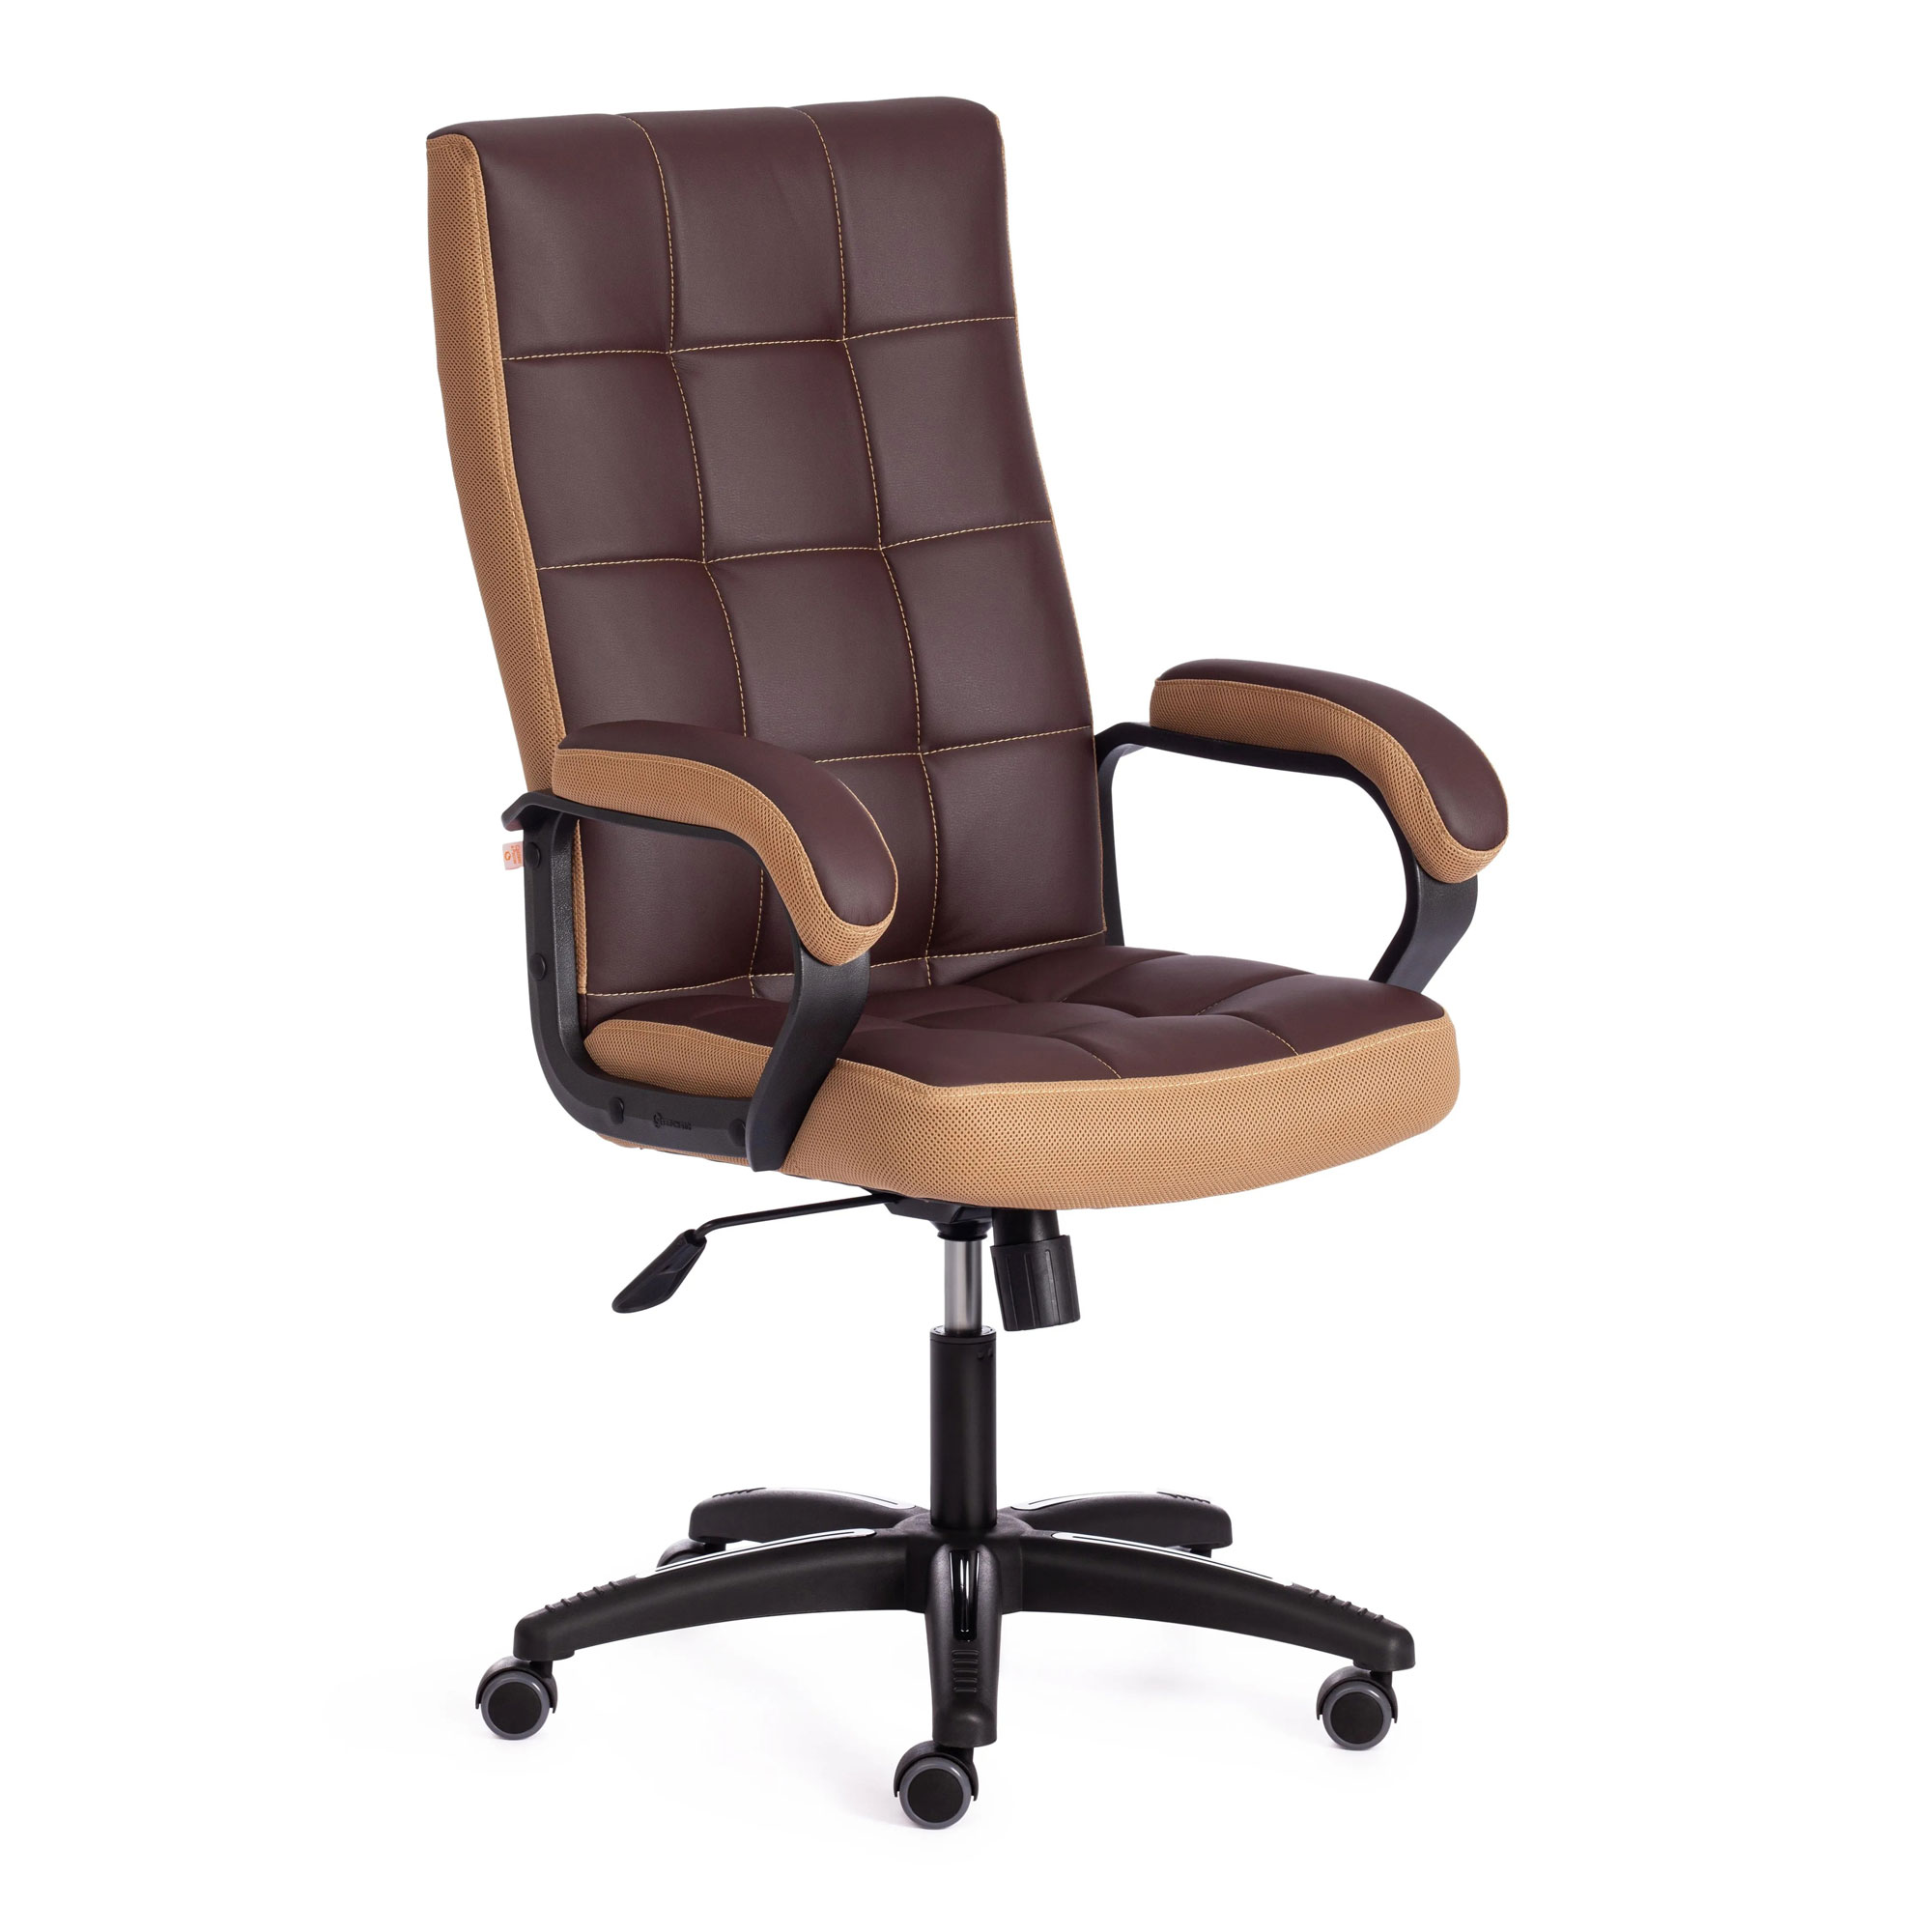 Кресло компьютерное TC искусственная кожа коричневое с бронзовым 61х47х126 см кресло компьютерное tc driver искусственная кожа коричневое с бронзовым 55х49х126 см